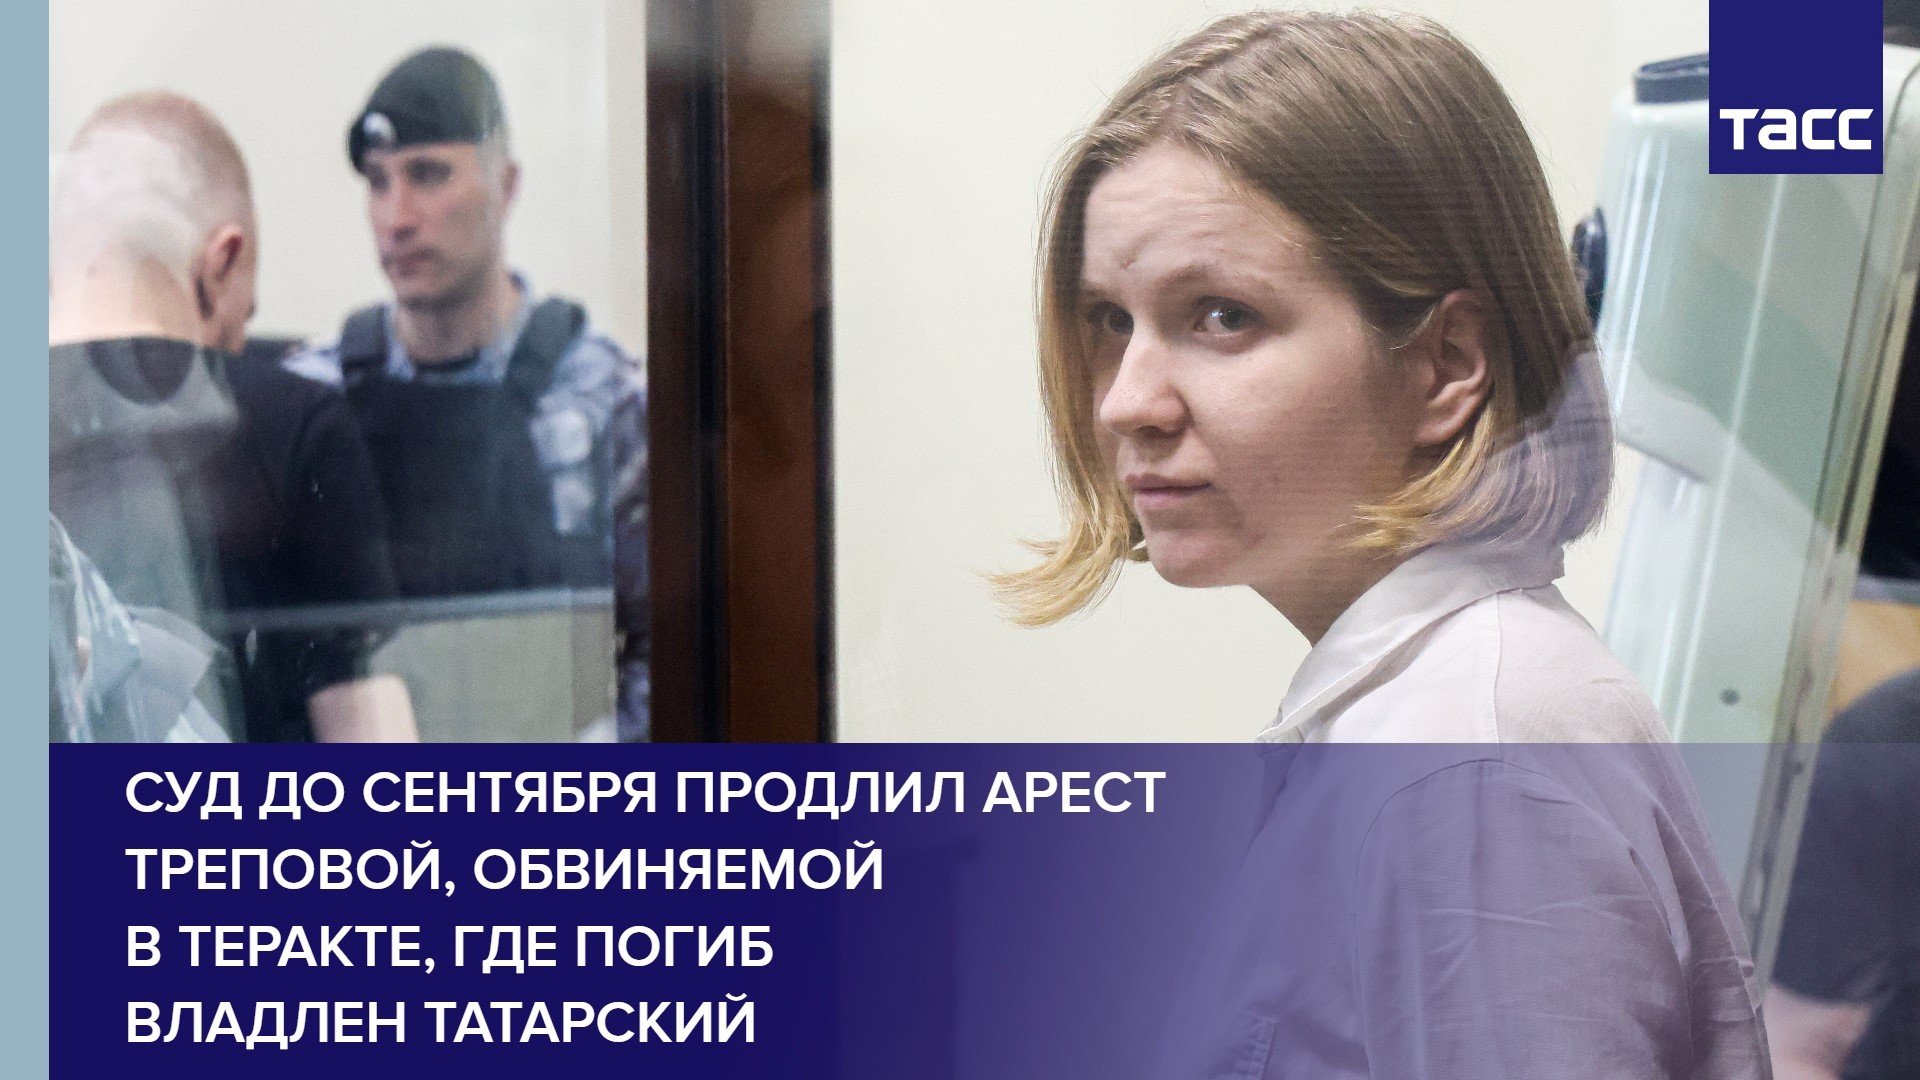 Суд до сентября продлил арест Треповой, обвиняемой в теракте, где погиб Владлен Татарский #shorts